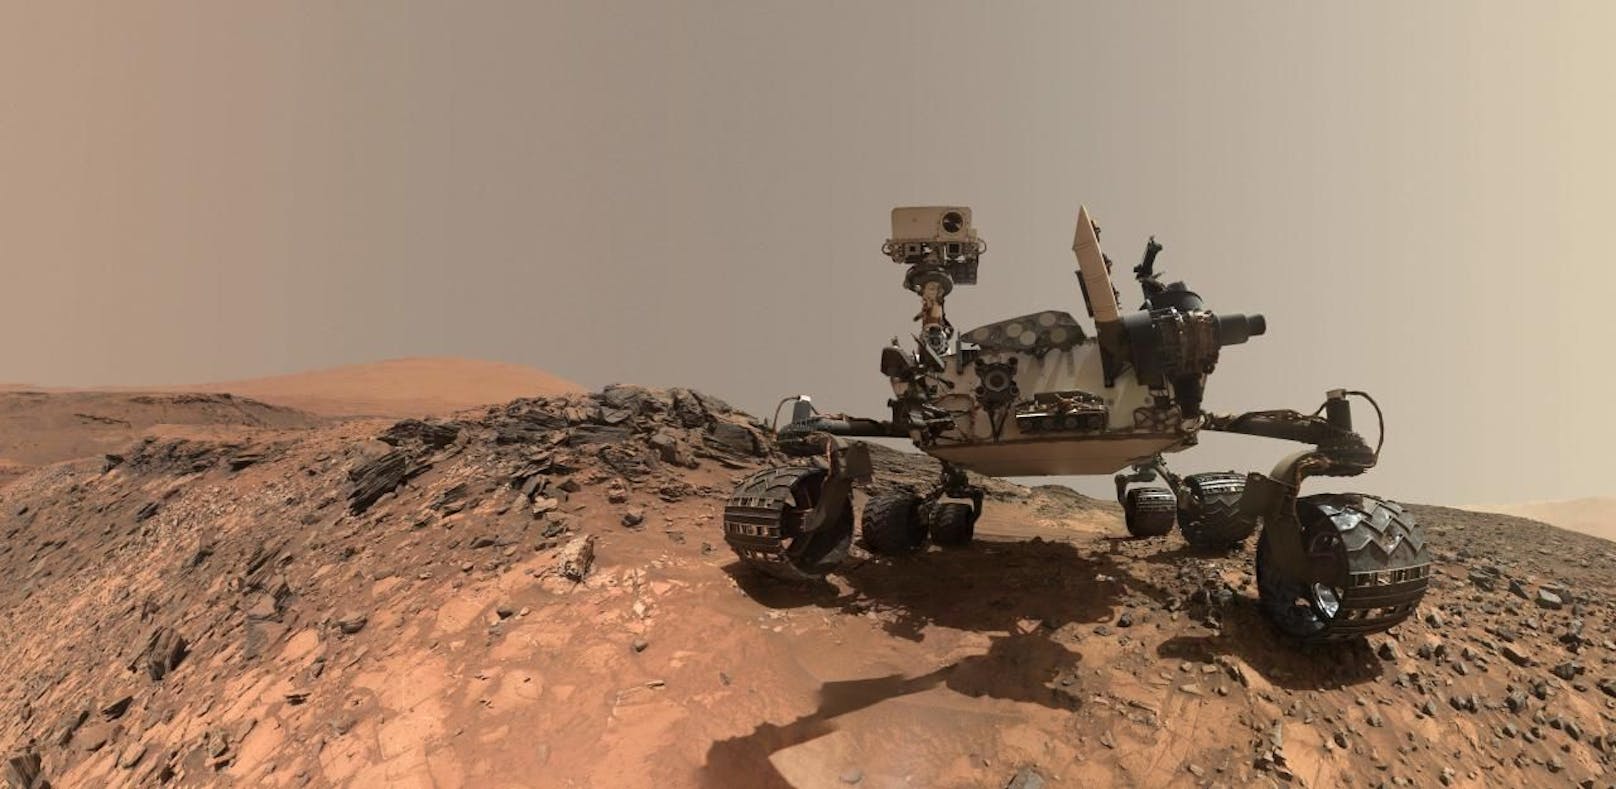 Keine Antwort: Mars-Rover wurde für tot erklärt